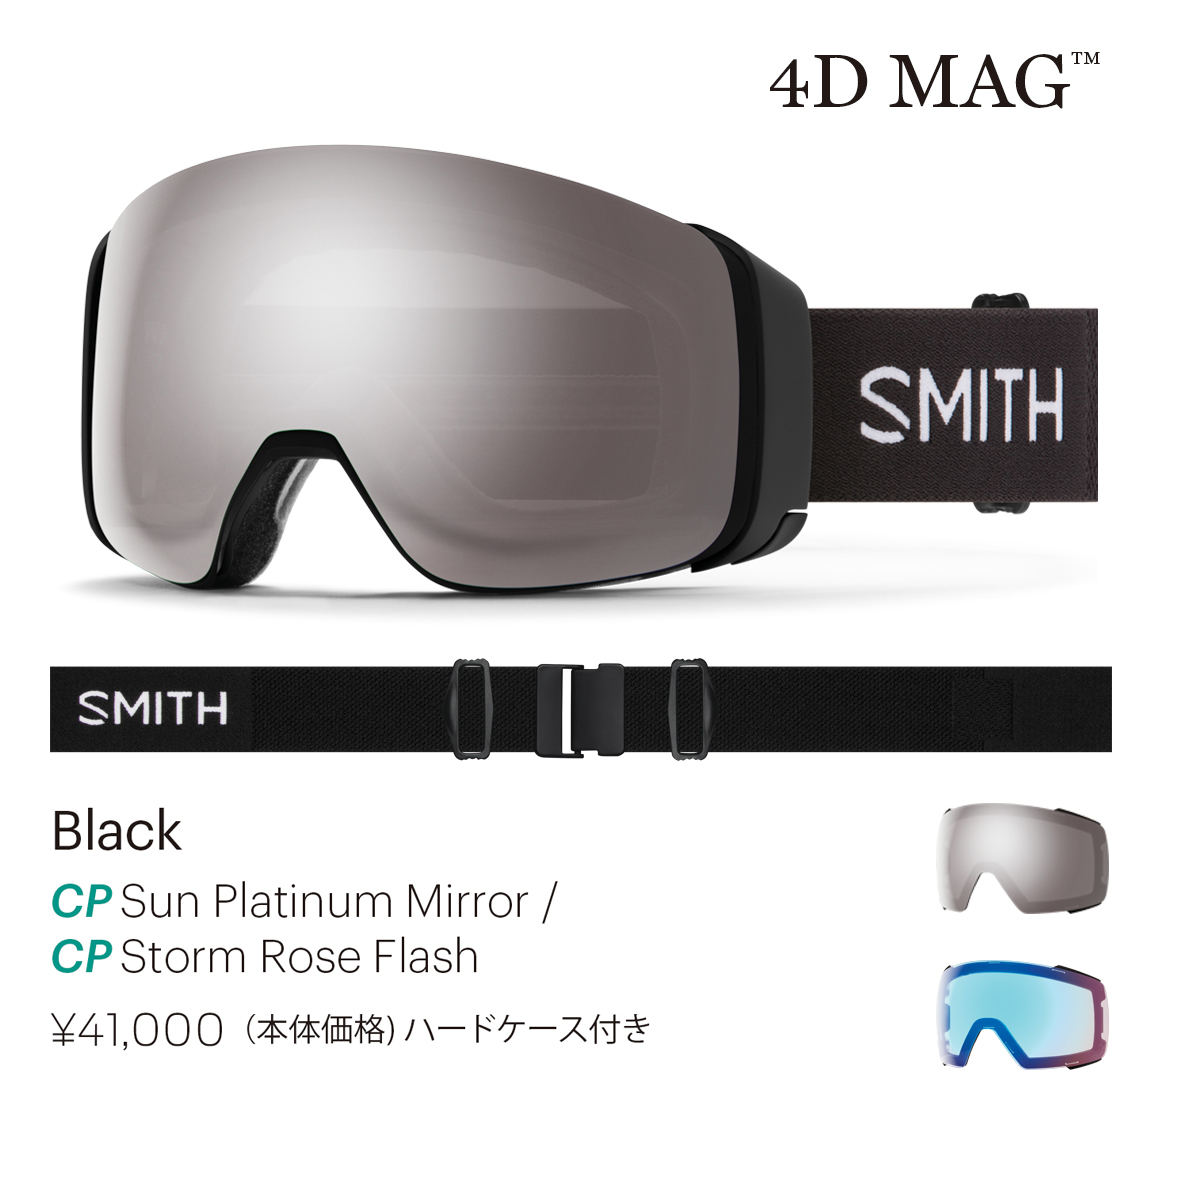 SMITH OPTICS 21-22 ディーラーページ-2（Premium User） | スノーボーディング WEBメディア SBN FREERUN  JAPAN